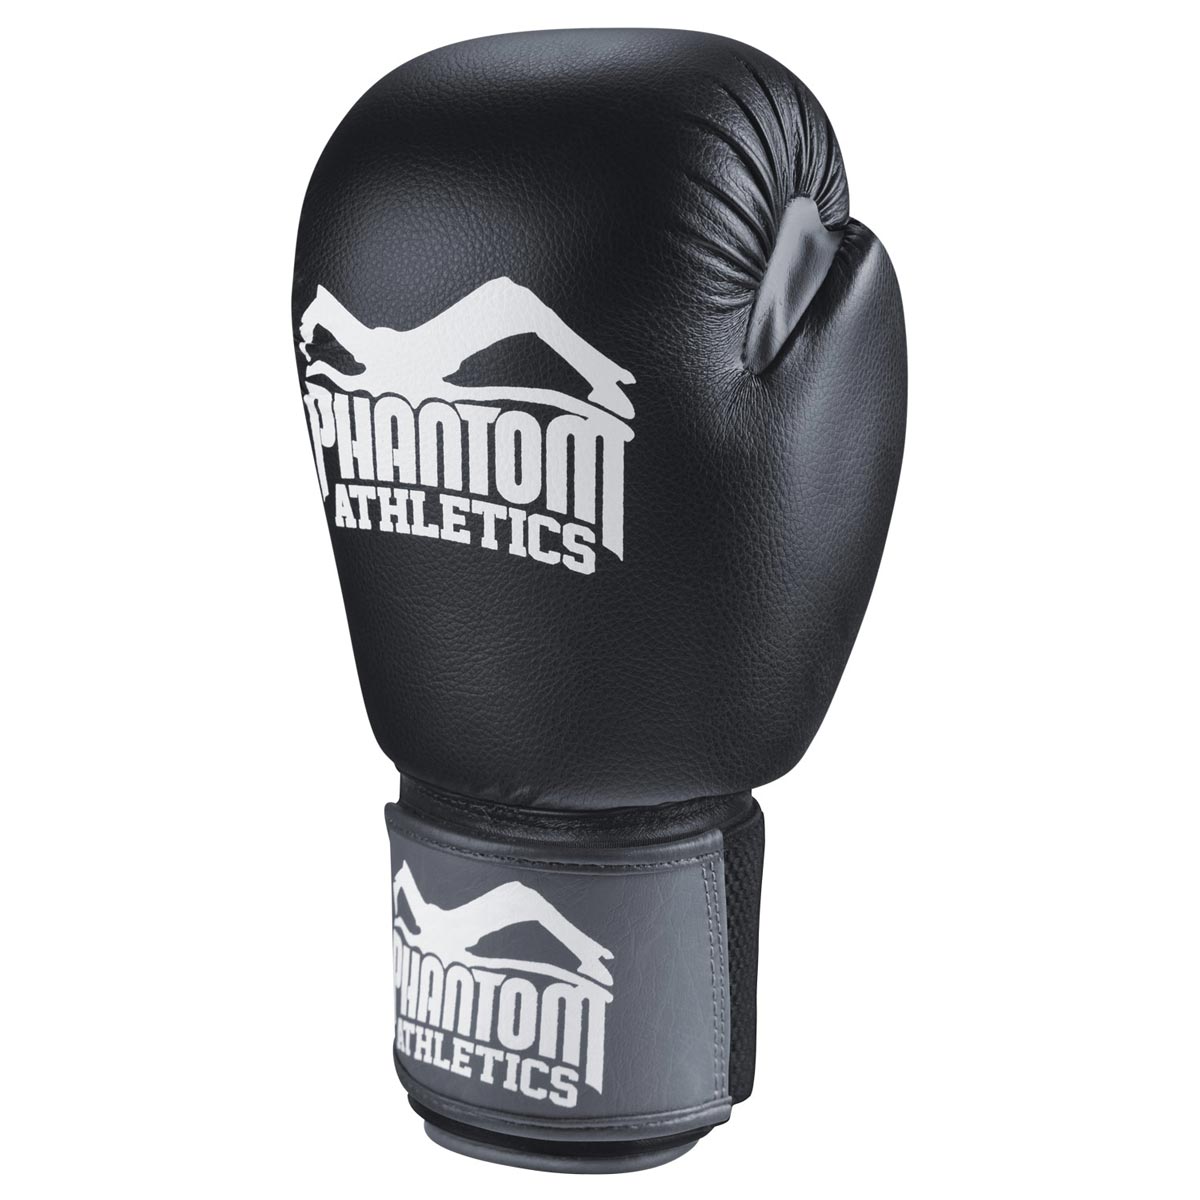 Der Phantom Utlra Boxhandschuh verfügt über eine vorgeformte Schaumstoffpolsterung für maximalen Schutz deiner Hände im Training.